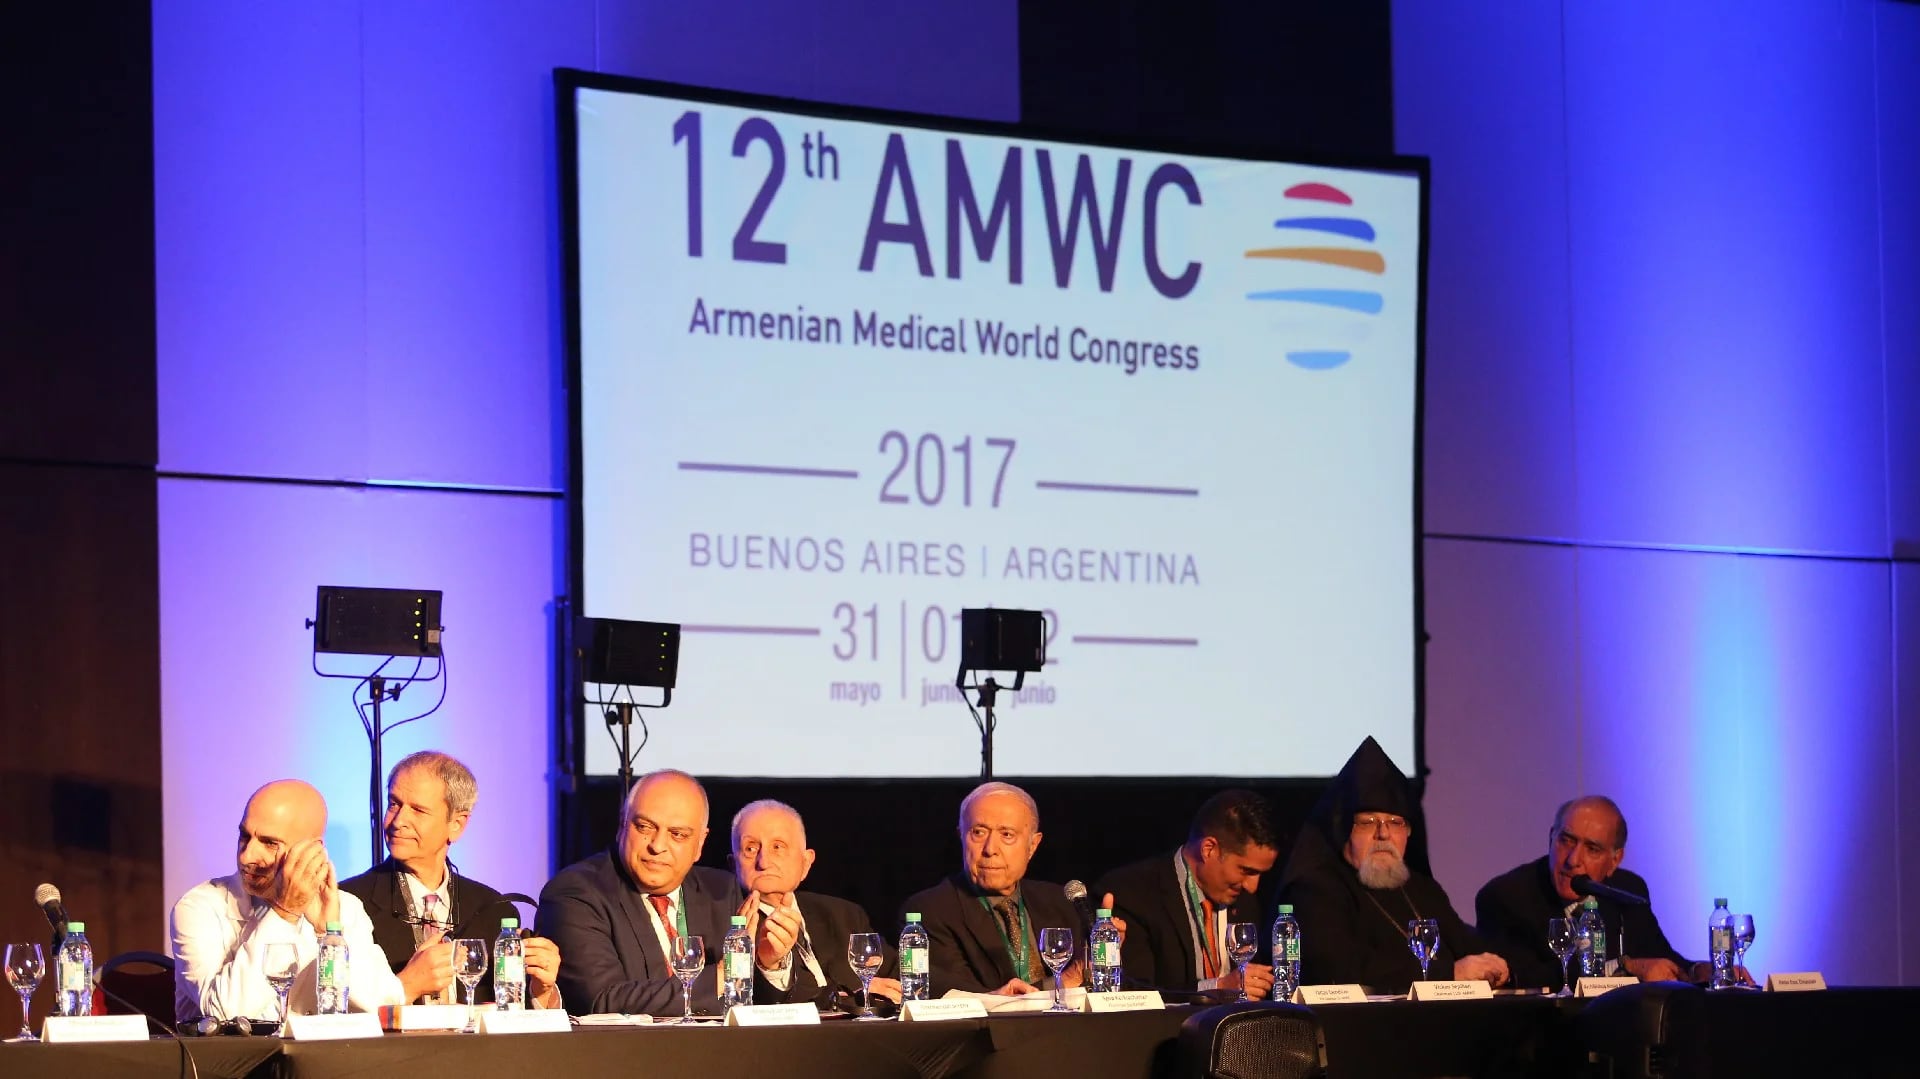 Renombrados profesionales de la comunidad armenia participaron de la presentación del 12° AMWC, que durante tres días de conferencia intentará expandir la “armenidad” al resto del mundo